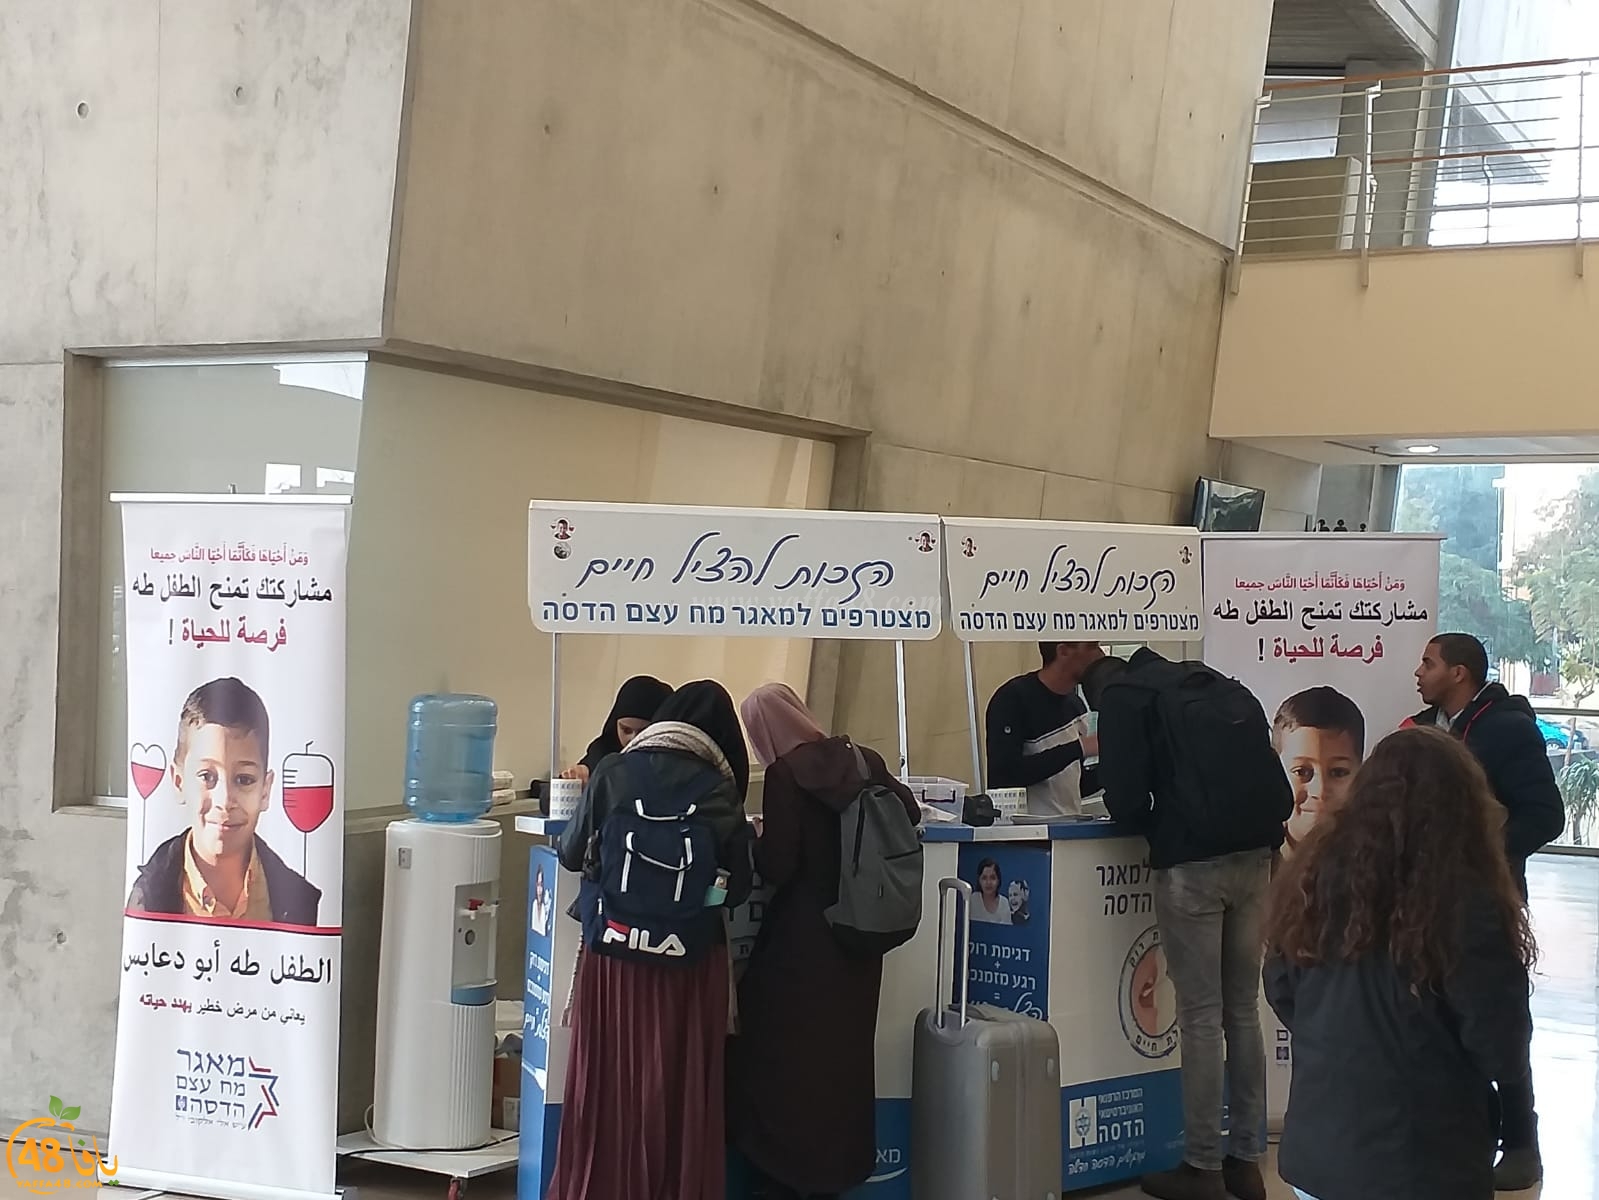 الكلية الأكاديمية بيافا تستضيف محطة لجمع العينات للطفل طه أبو دعابس